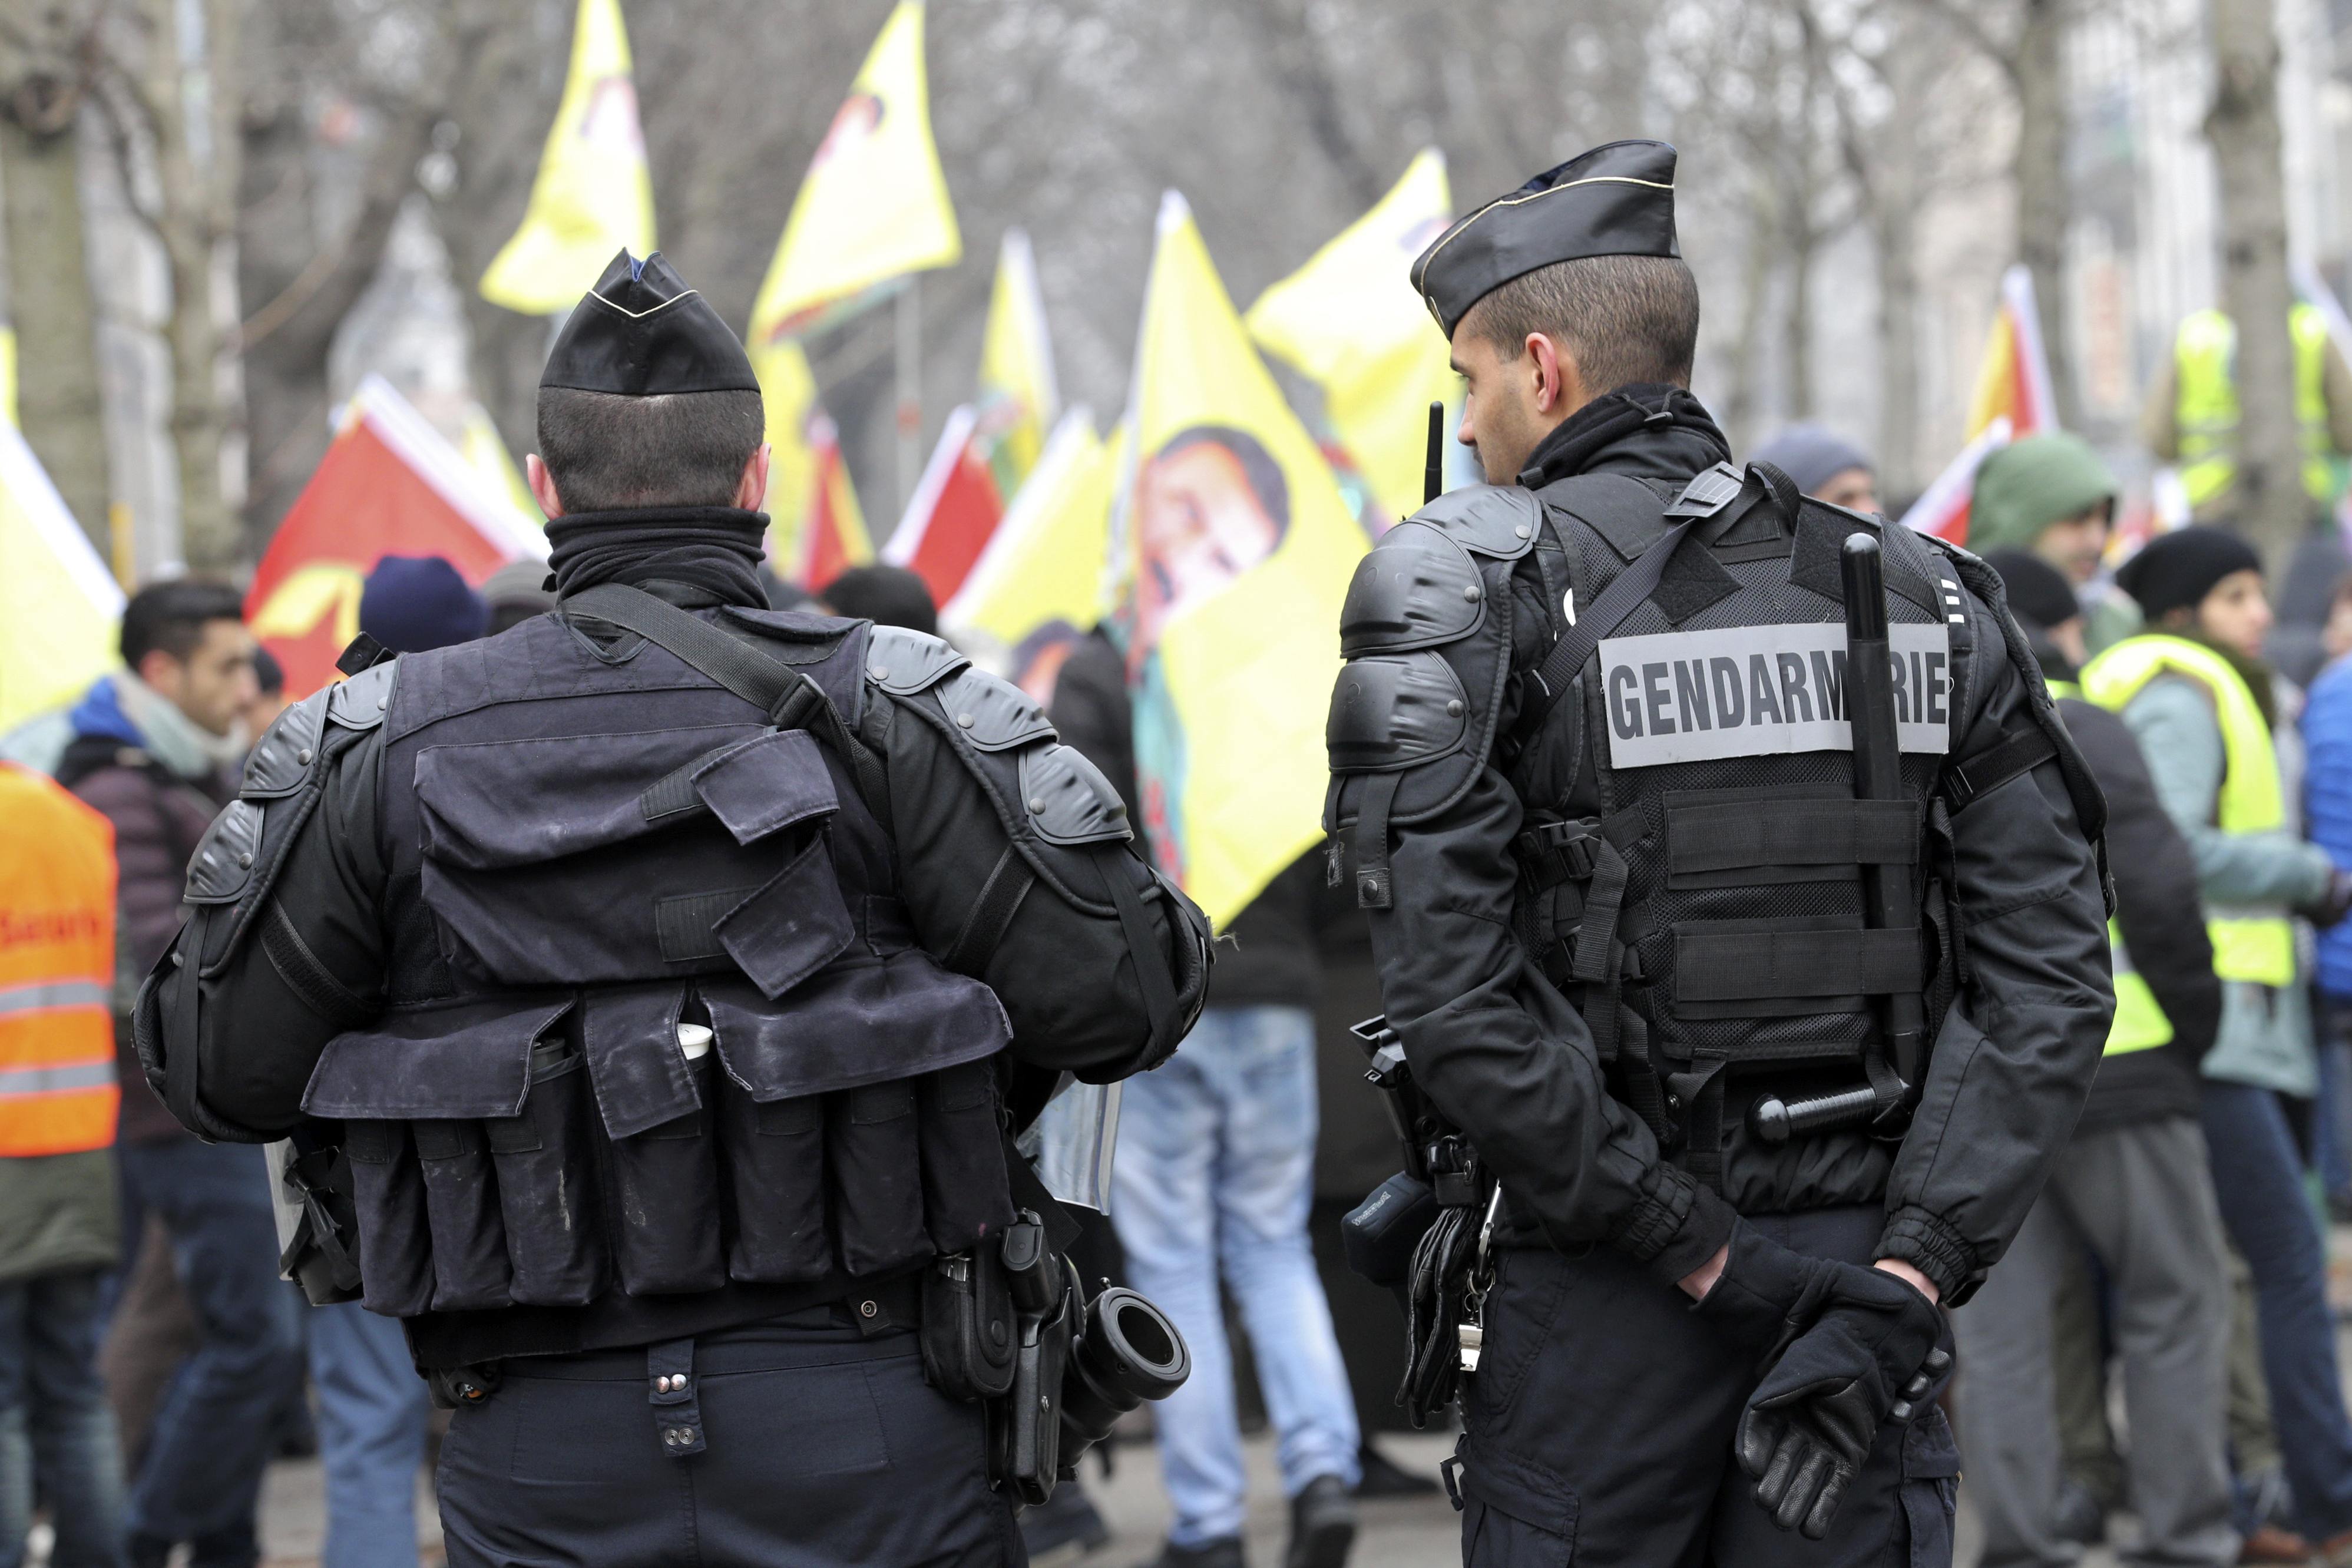 2016 yılında Avrupa'da PKK terörü raporu